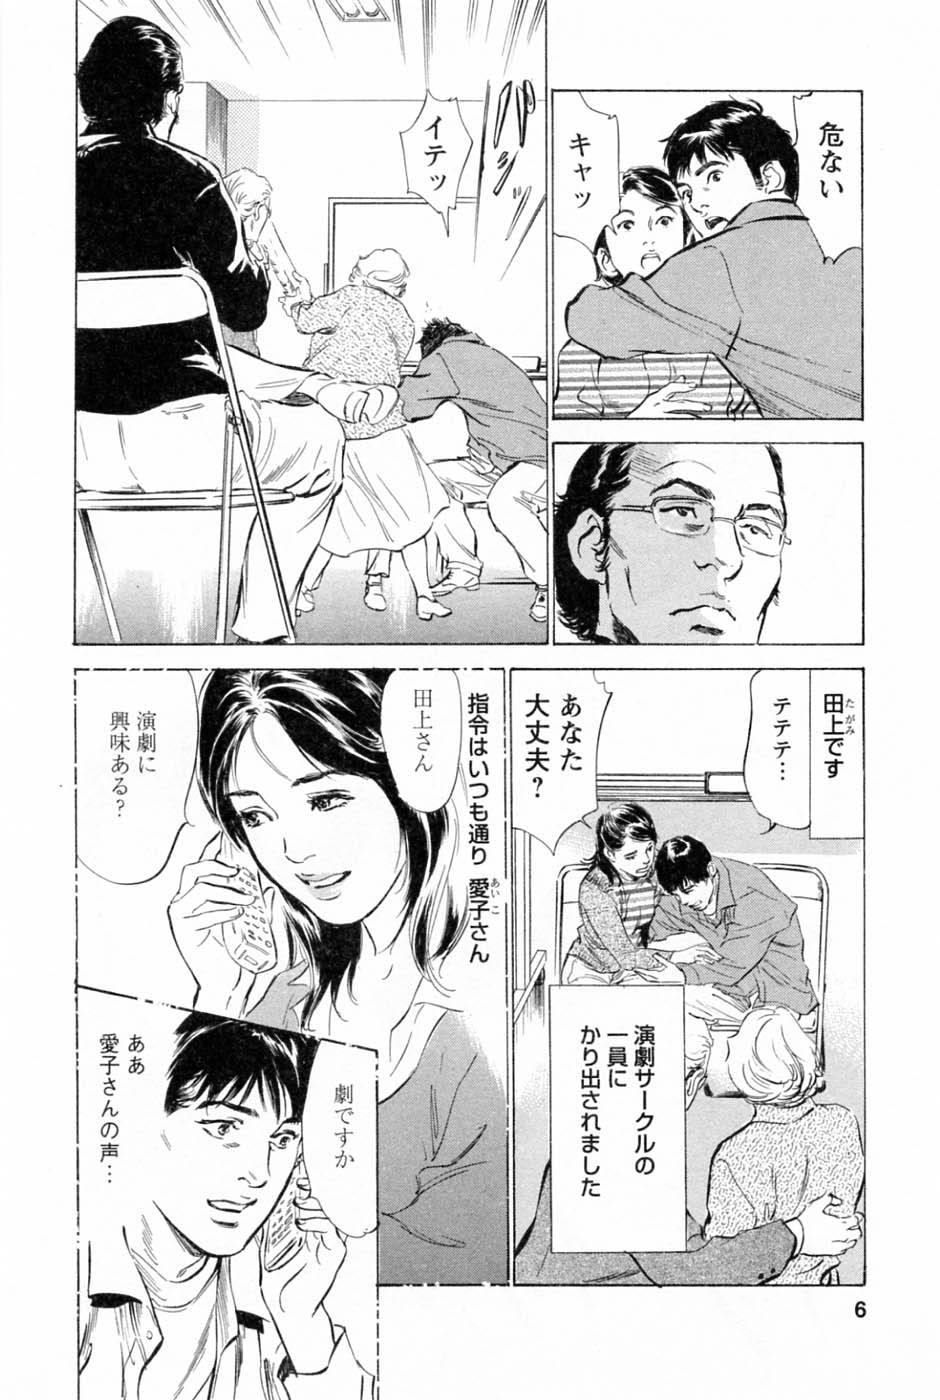 [Tomisawa Chinatsu, Hazuki Kaoru] My Pure Lady Vol.2 page 10 full